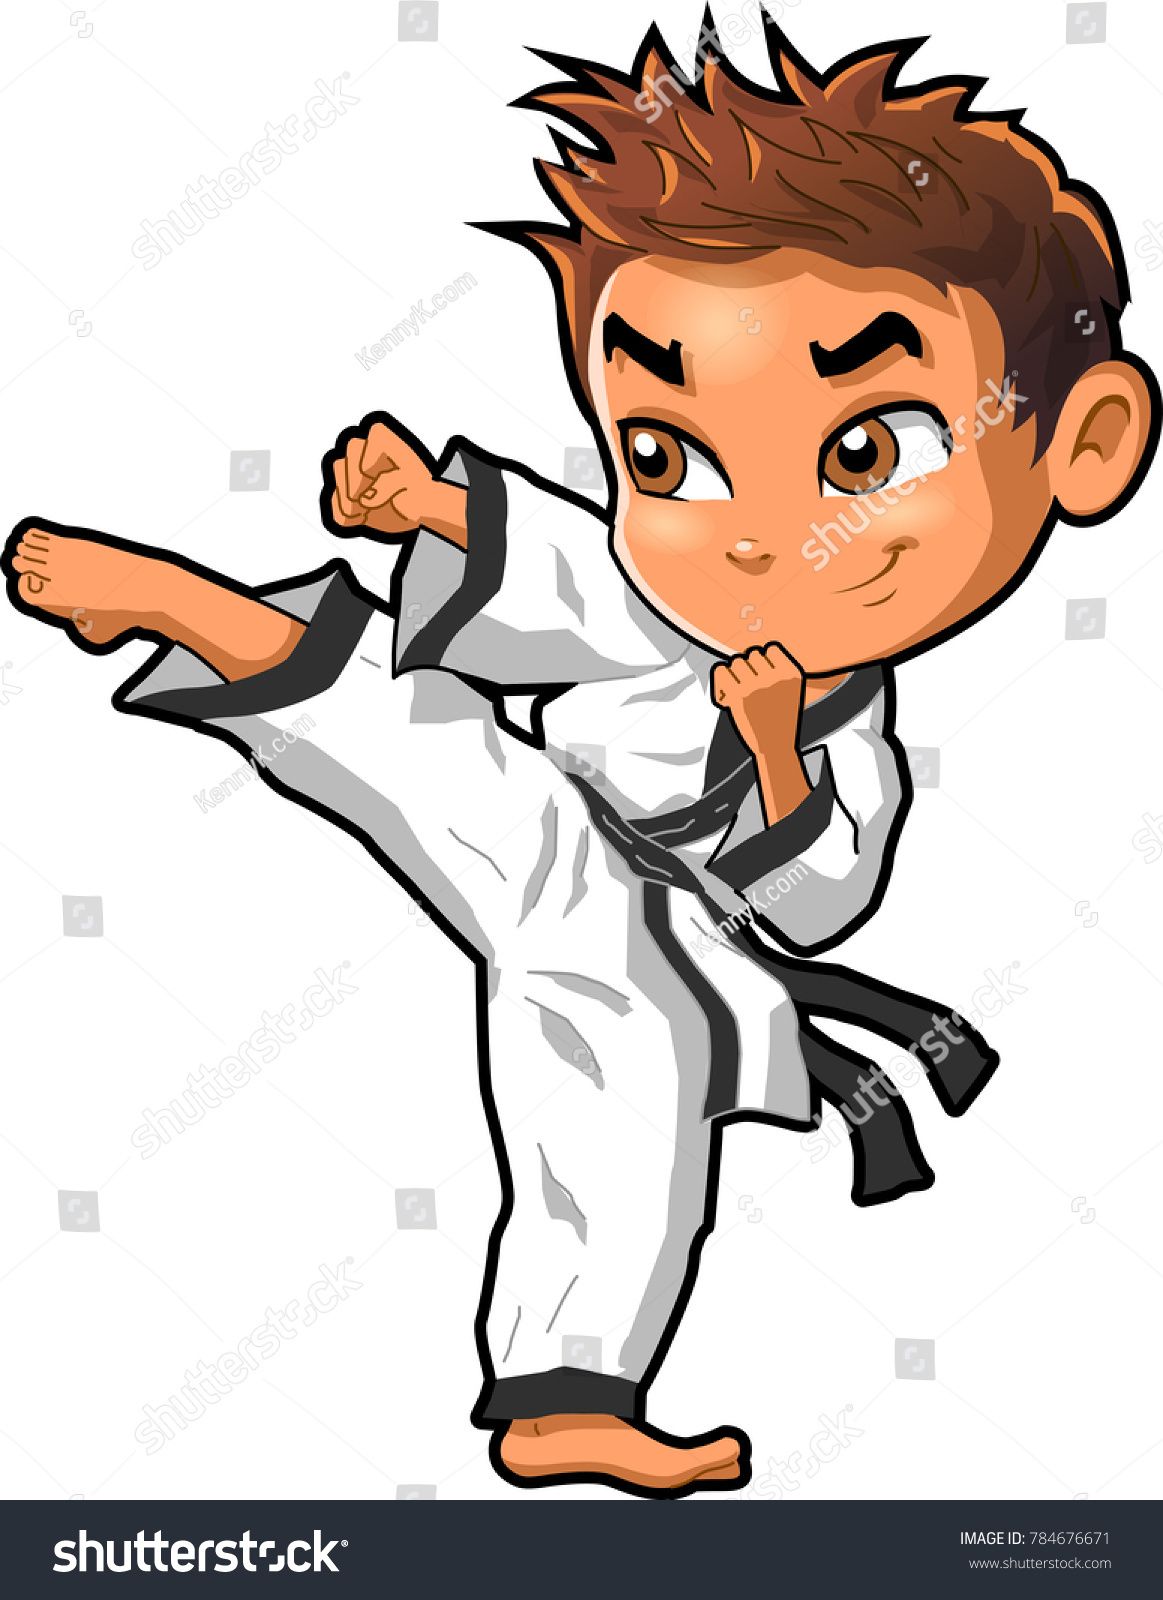 Karate clipart chibi, Karate chibi Transparent FREE for download on